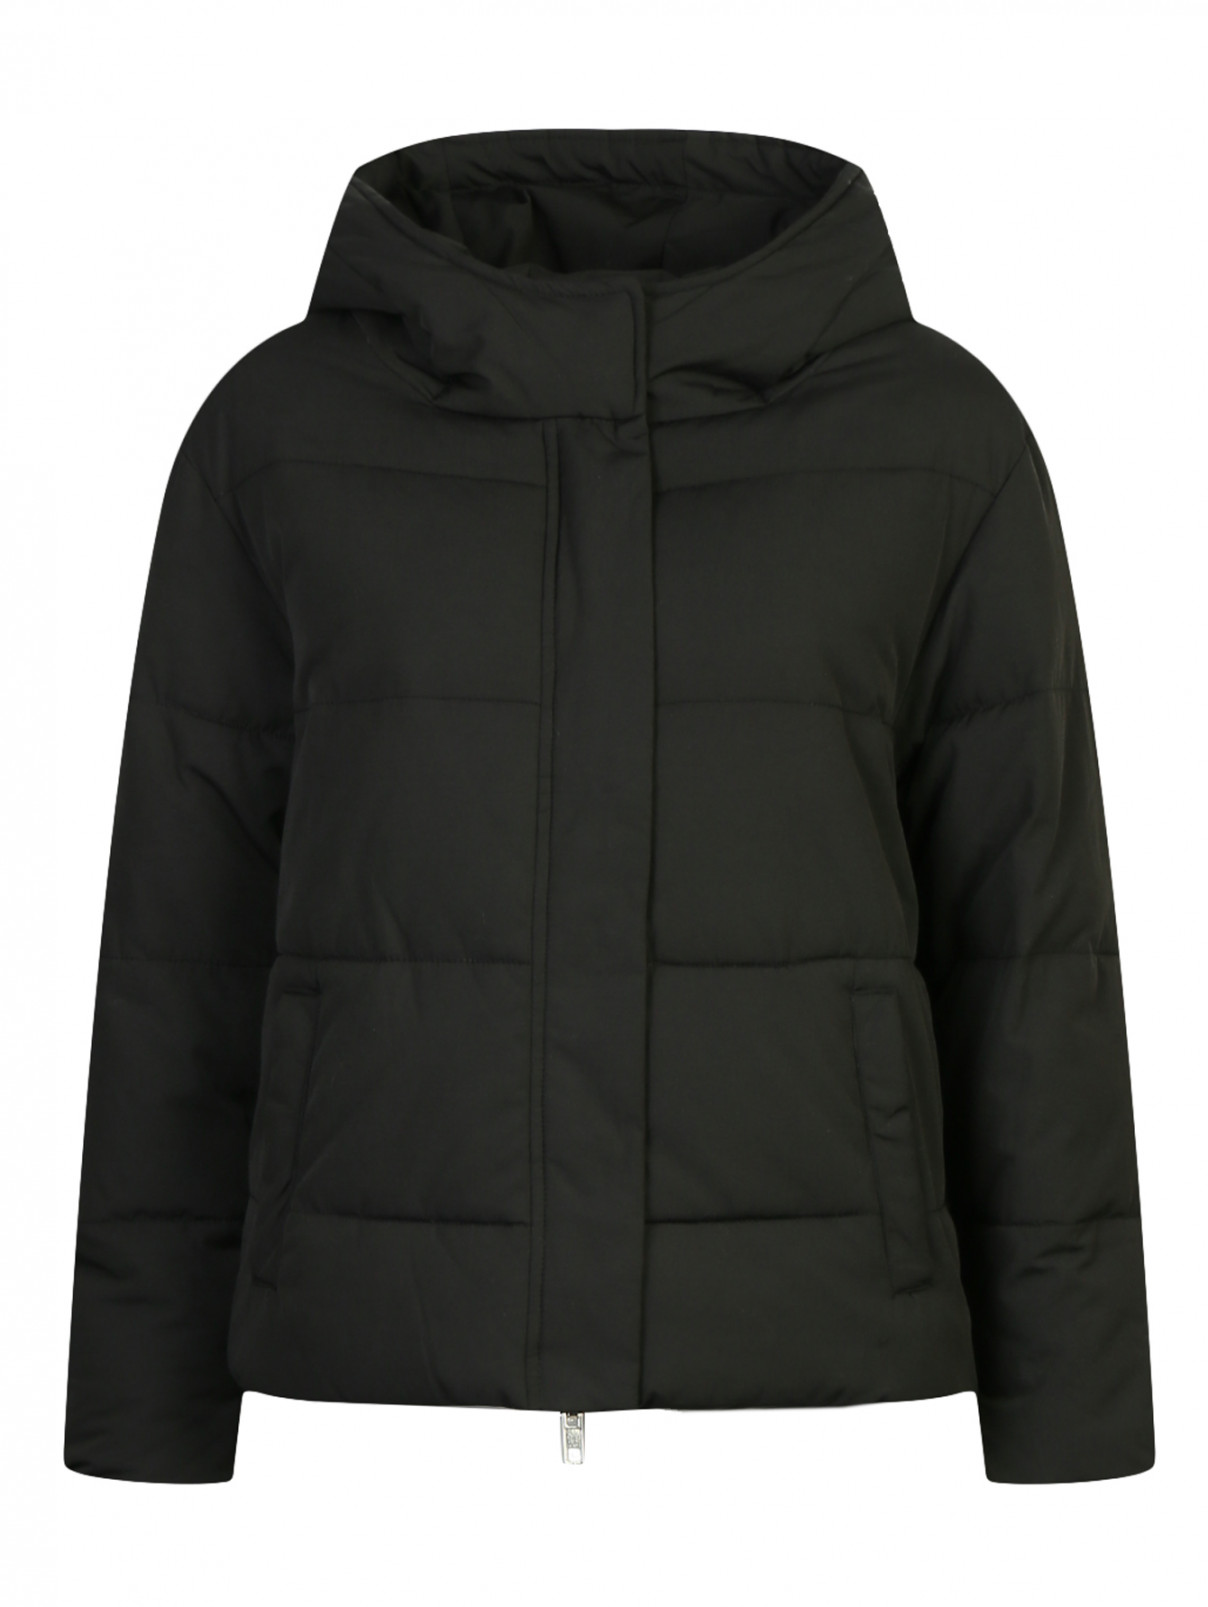 Куртка на молнии с контрастной вышивкой Zoe Karssen  –  Общий вид  – Цвет:  Черный